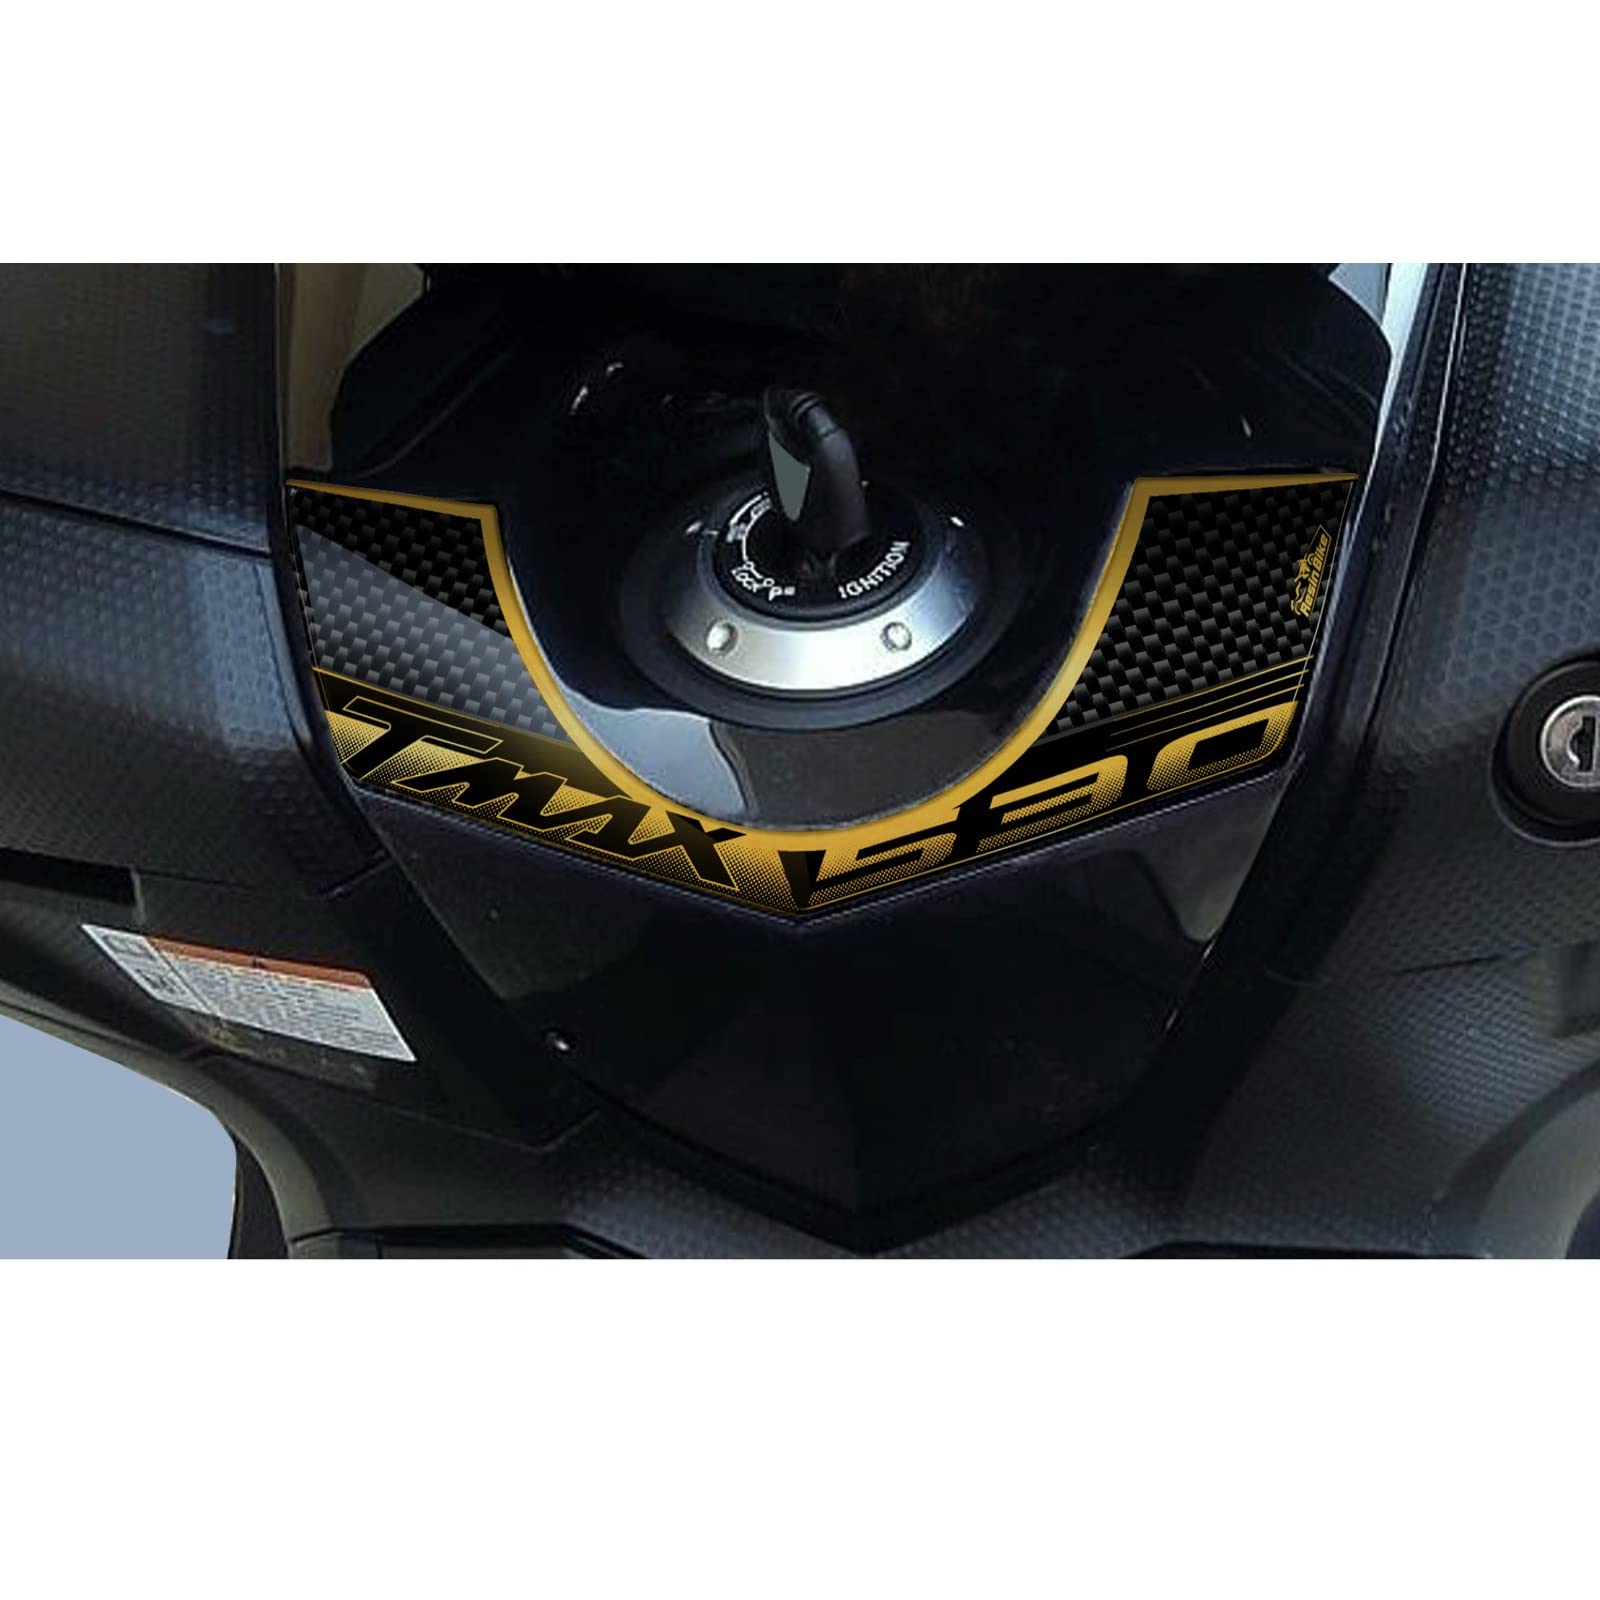 Resin Bike Aufkleber für Motorrad Kompatibel mit Yamaha Tmax 530 2012 2016. Schlüsselschutz vor Stößen und Kratzern. 3D-Harzklebstoff – Stickers - Made in Italy von Resin Bike